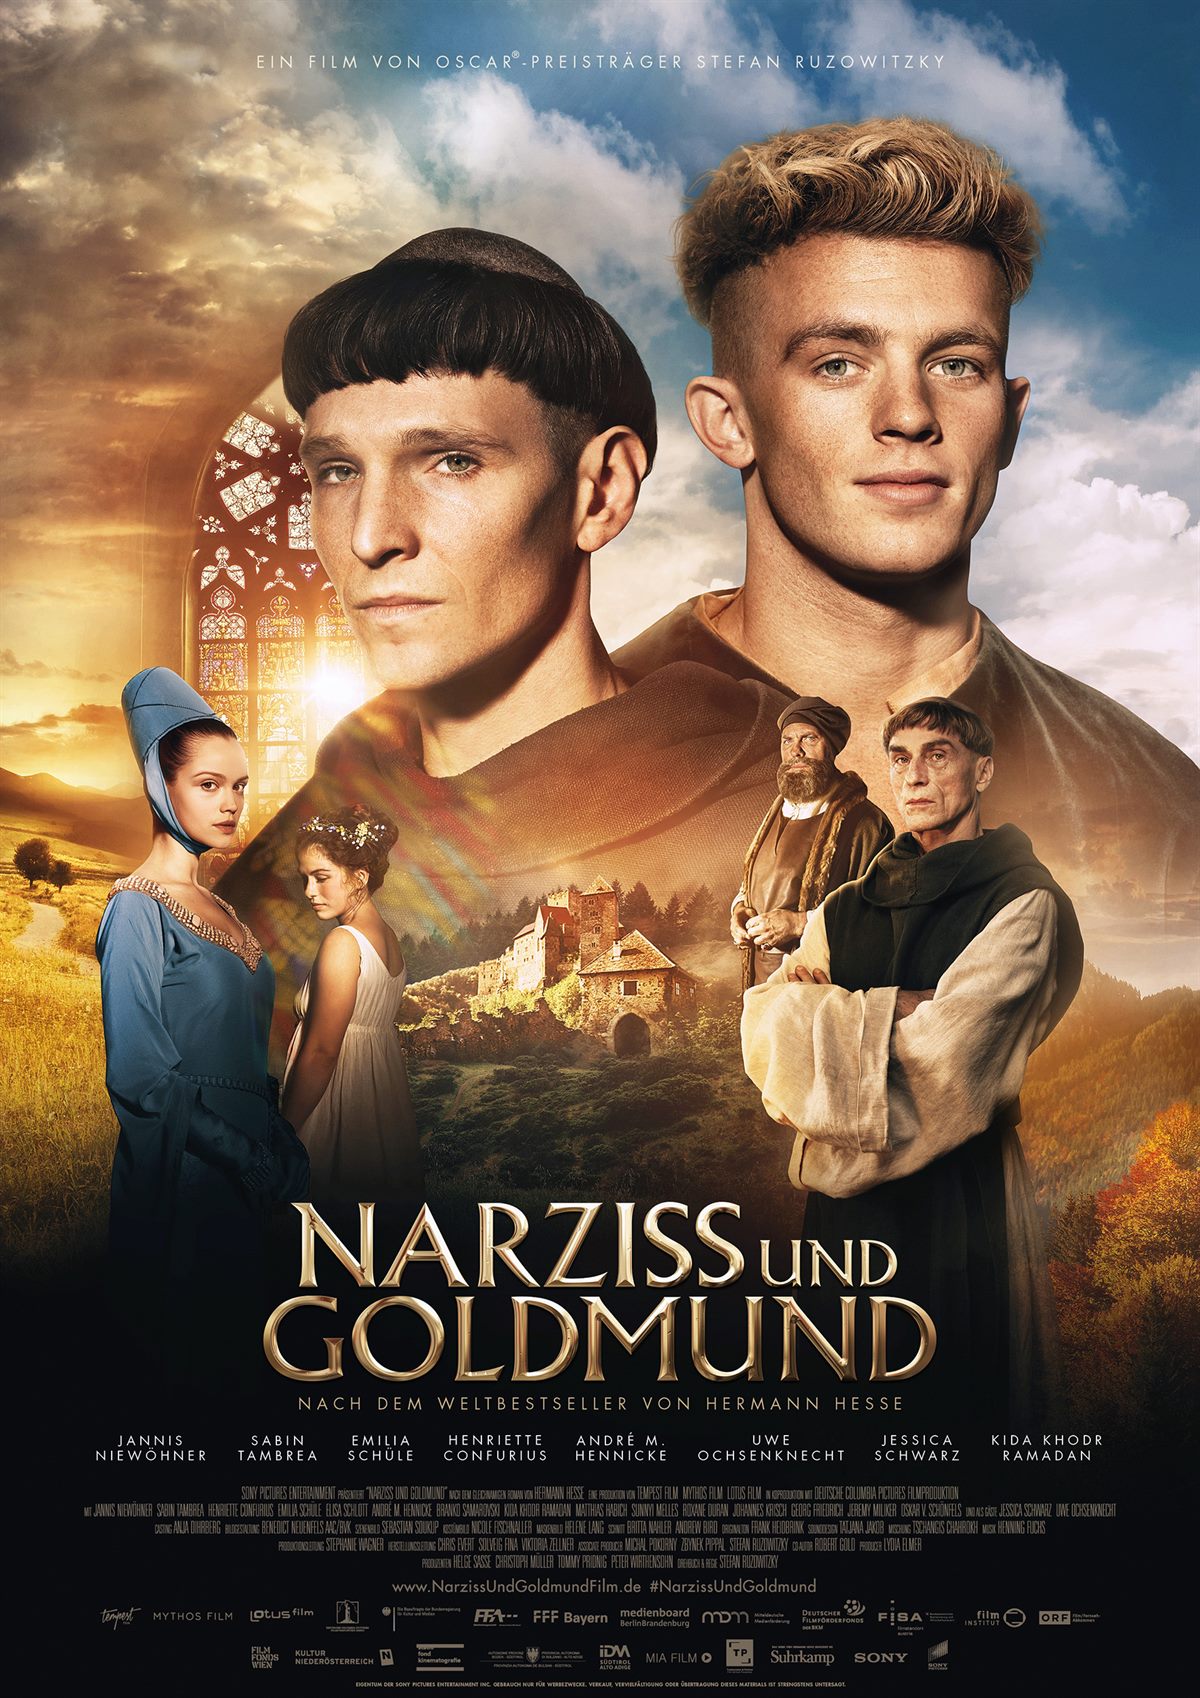 Narziss_und_Goldmund_Film_Presse3